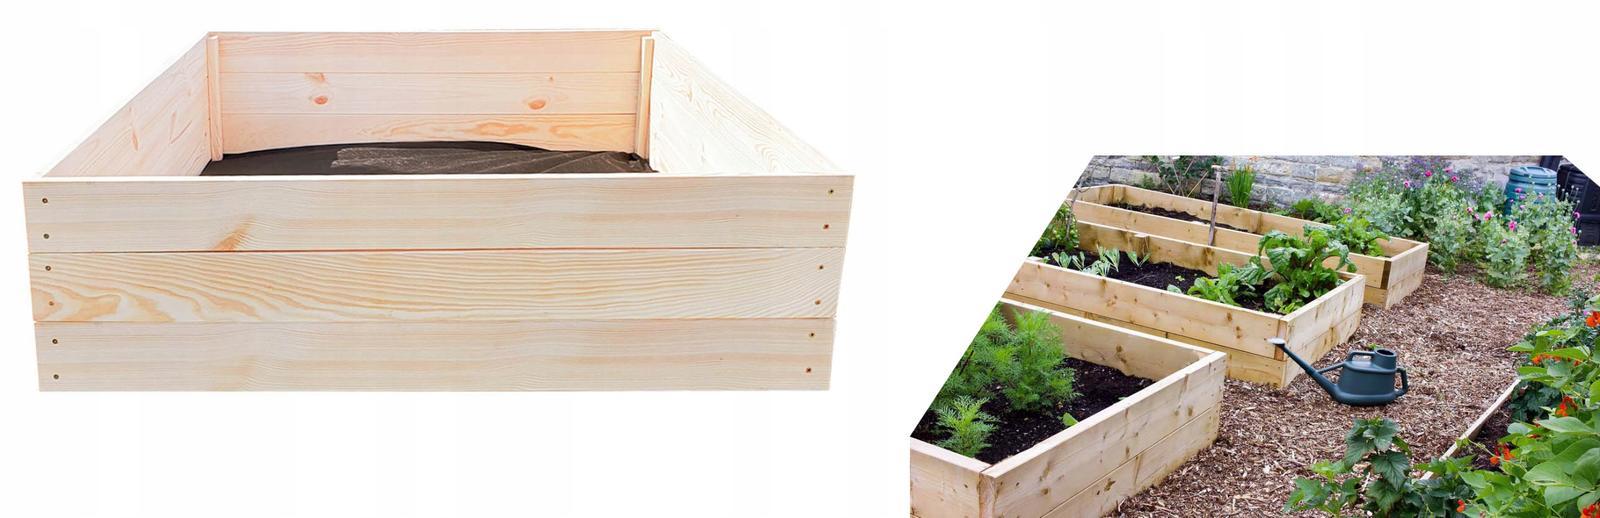 Warzywniak skrzynia na warzywa inspekt zielnik 80x120x27 poradnik gratis do ogrodu nr. 10